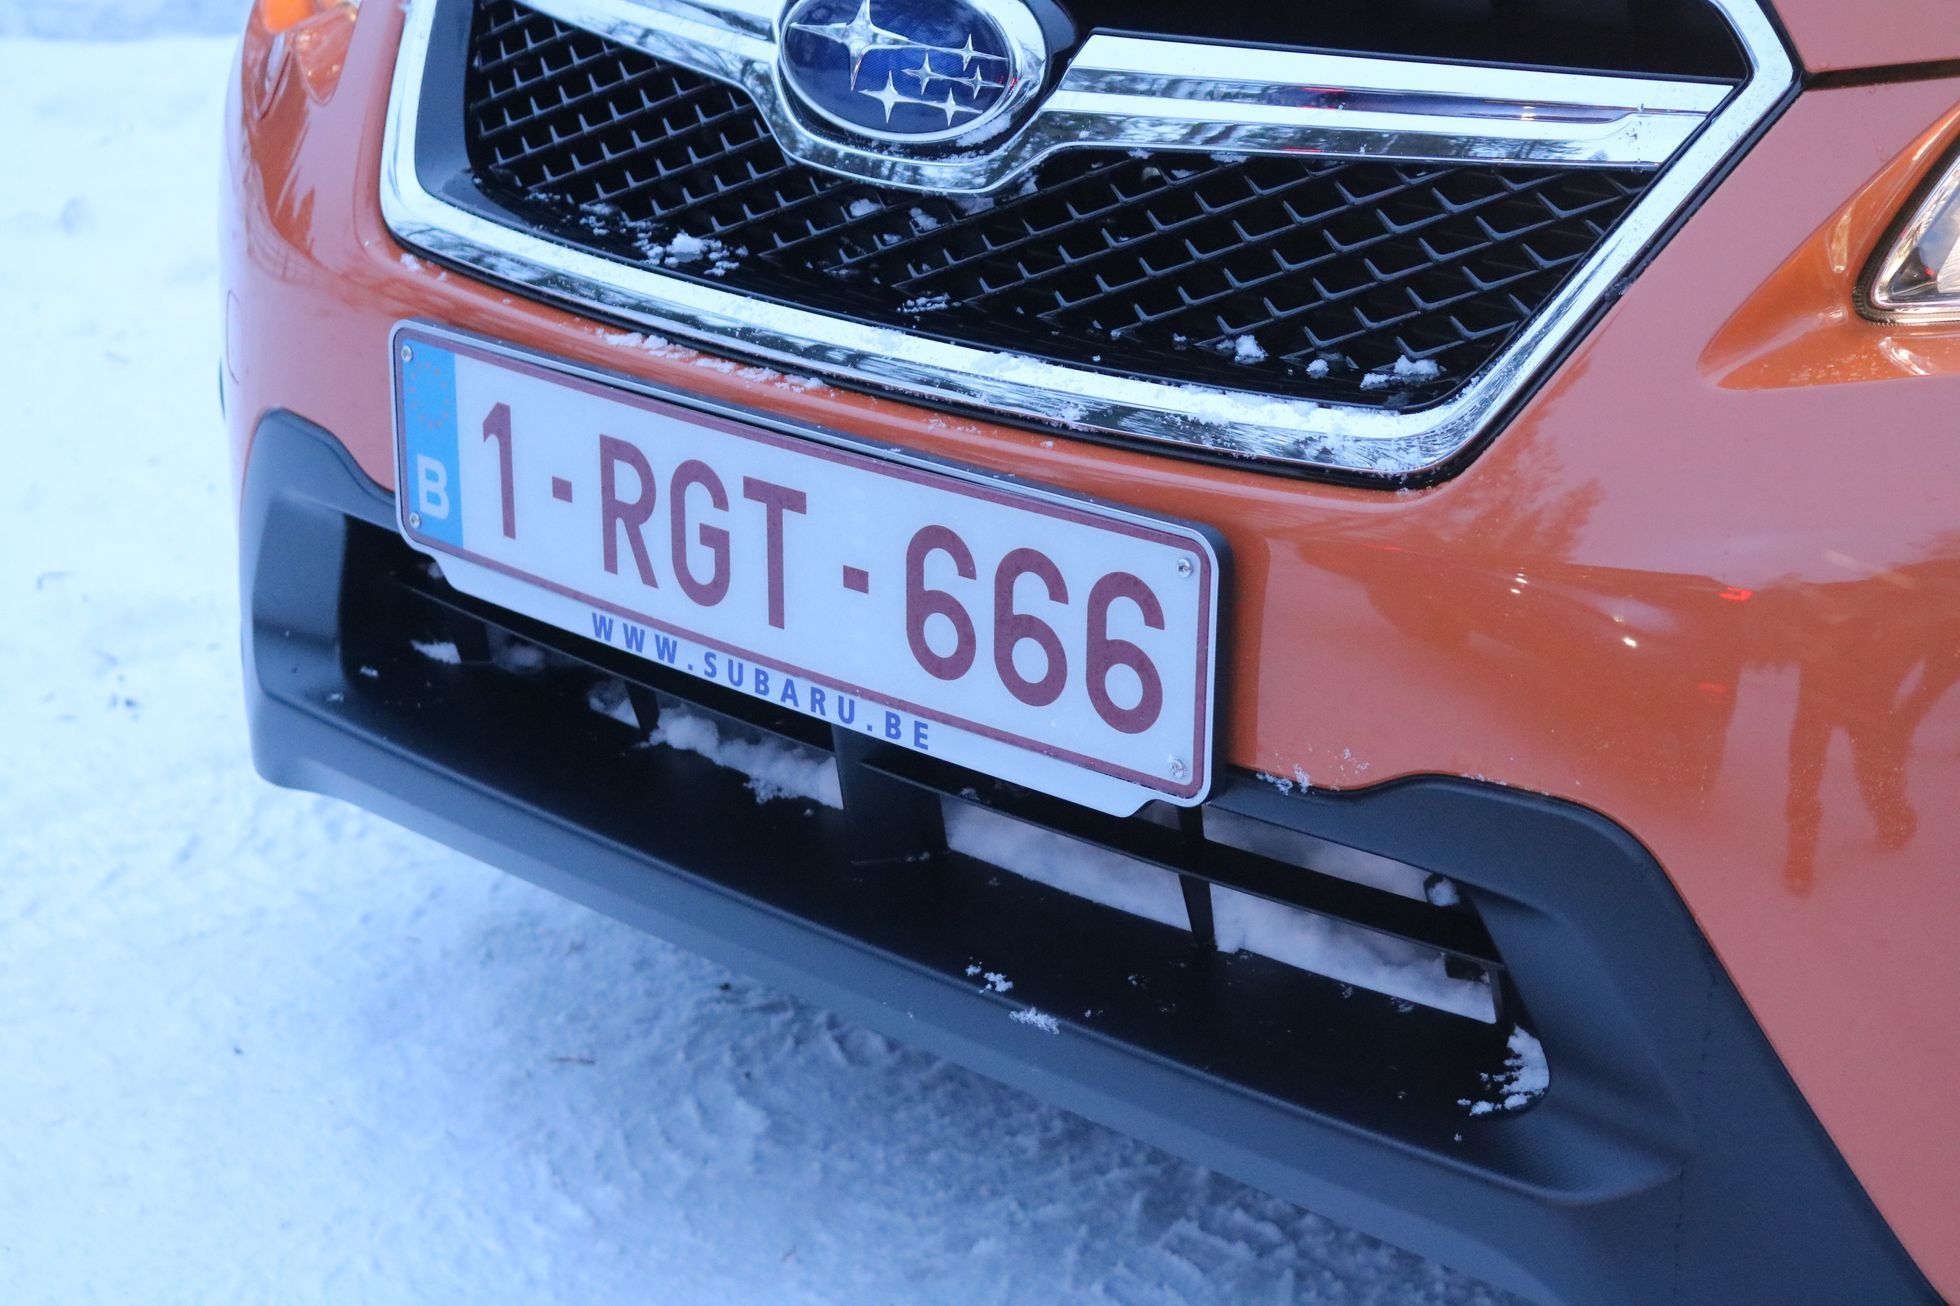 Subaru na sněhu Finsko